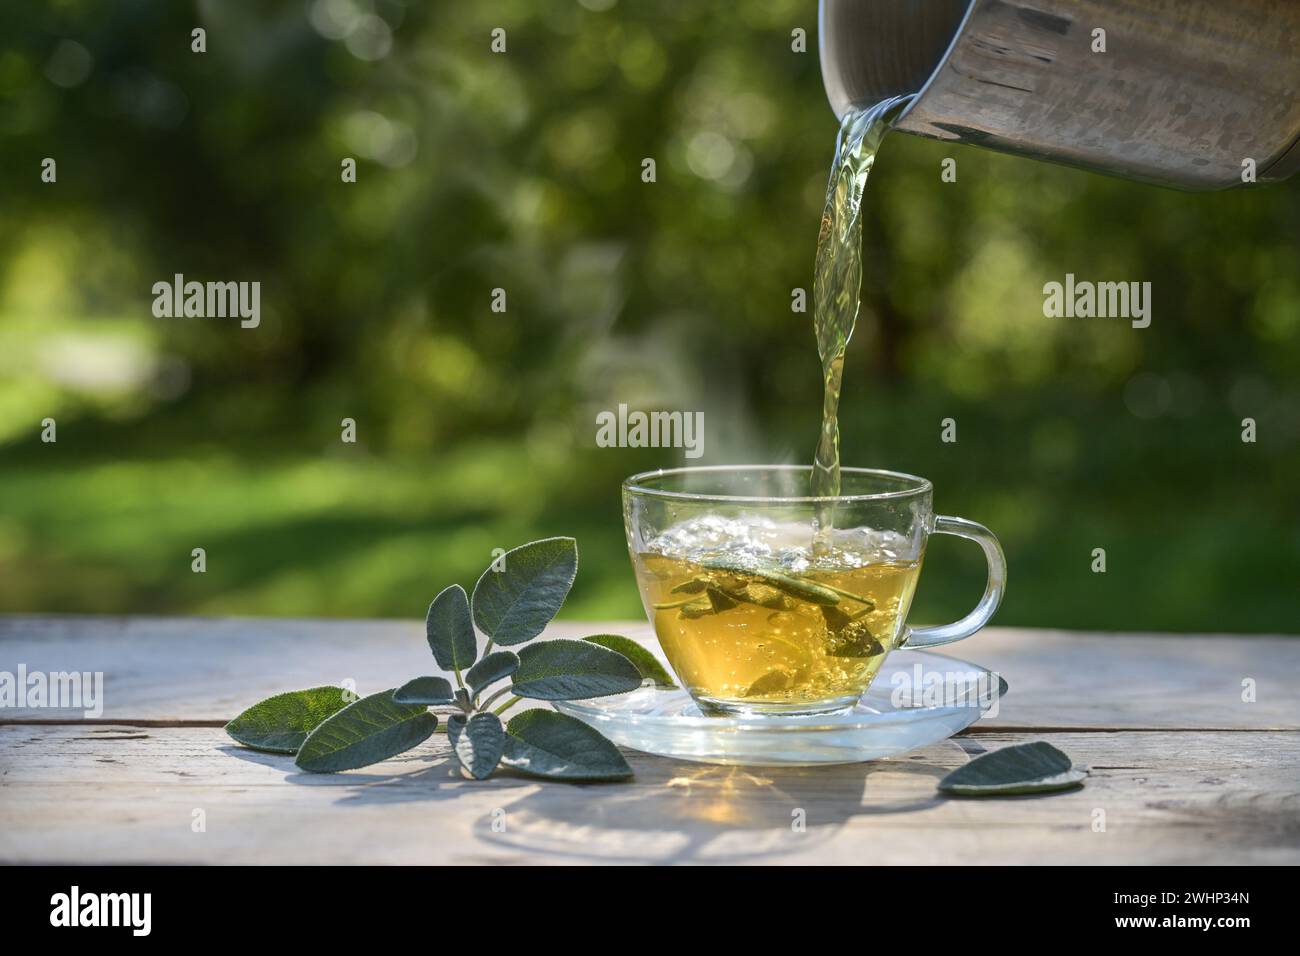 Verser de l'eau chaude dans une tasse en verre avec des feuilles de sauge, une tisane saine et un remède maison pour la toux, le mal de gorge et le prob digestif Banque D'Images